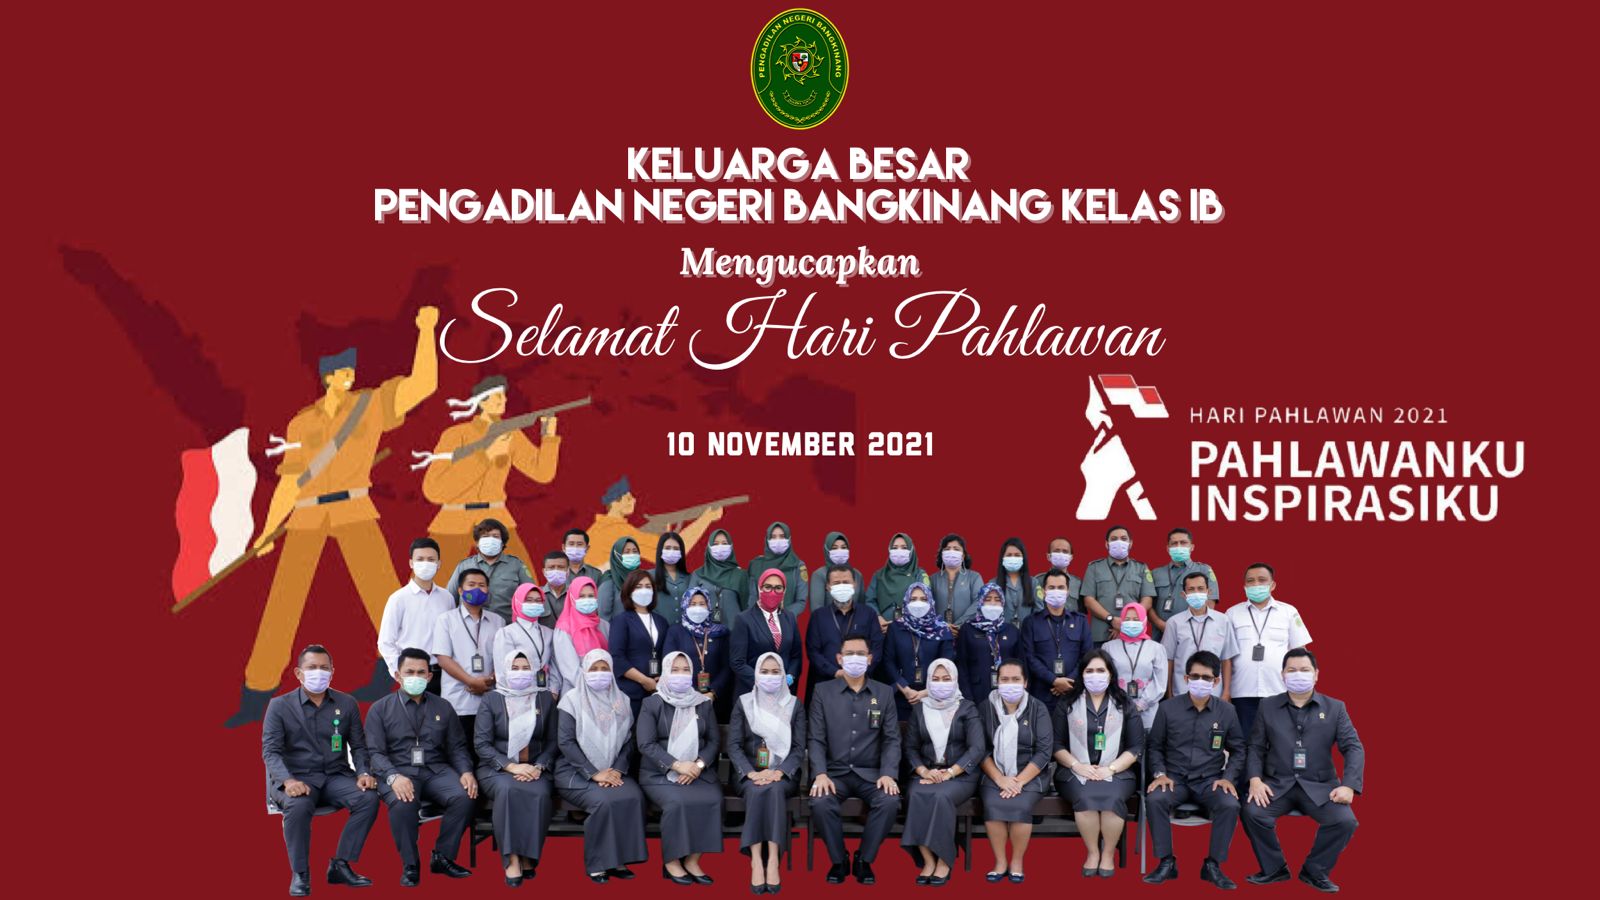 Pengadilan Negeri Bangkinang Kelas IB Mengucapkan Selamat Pahlawan 10 November 2021